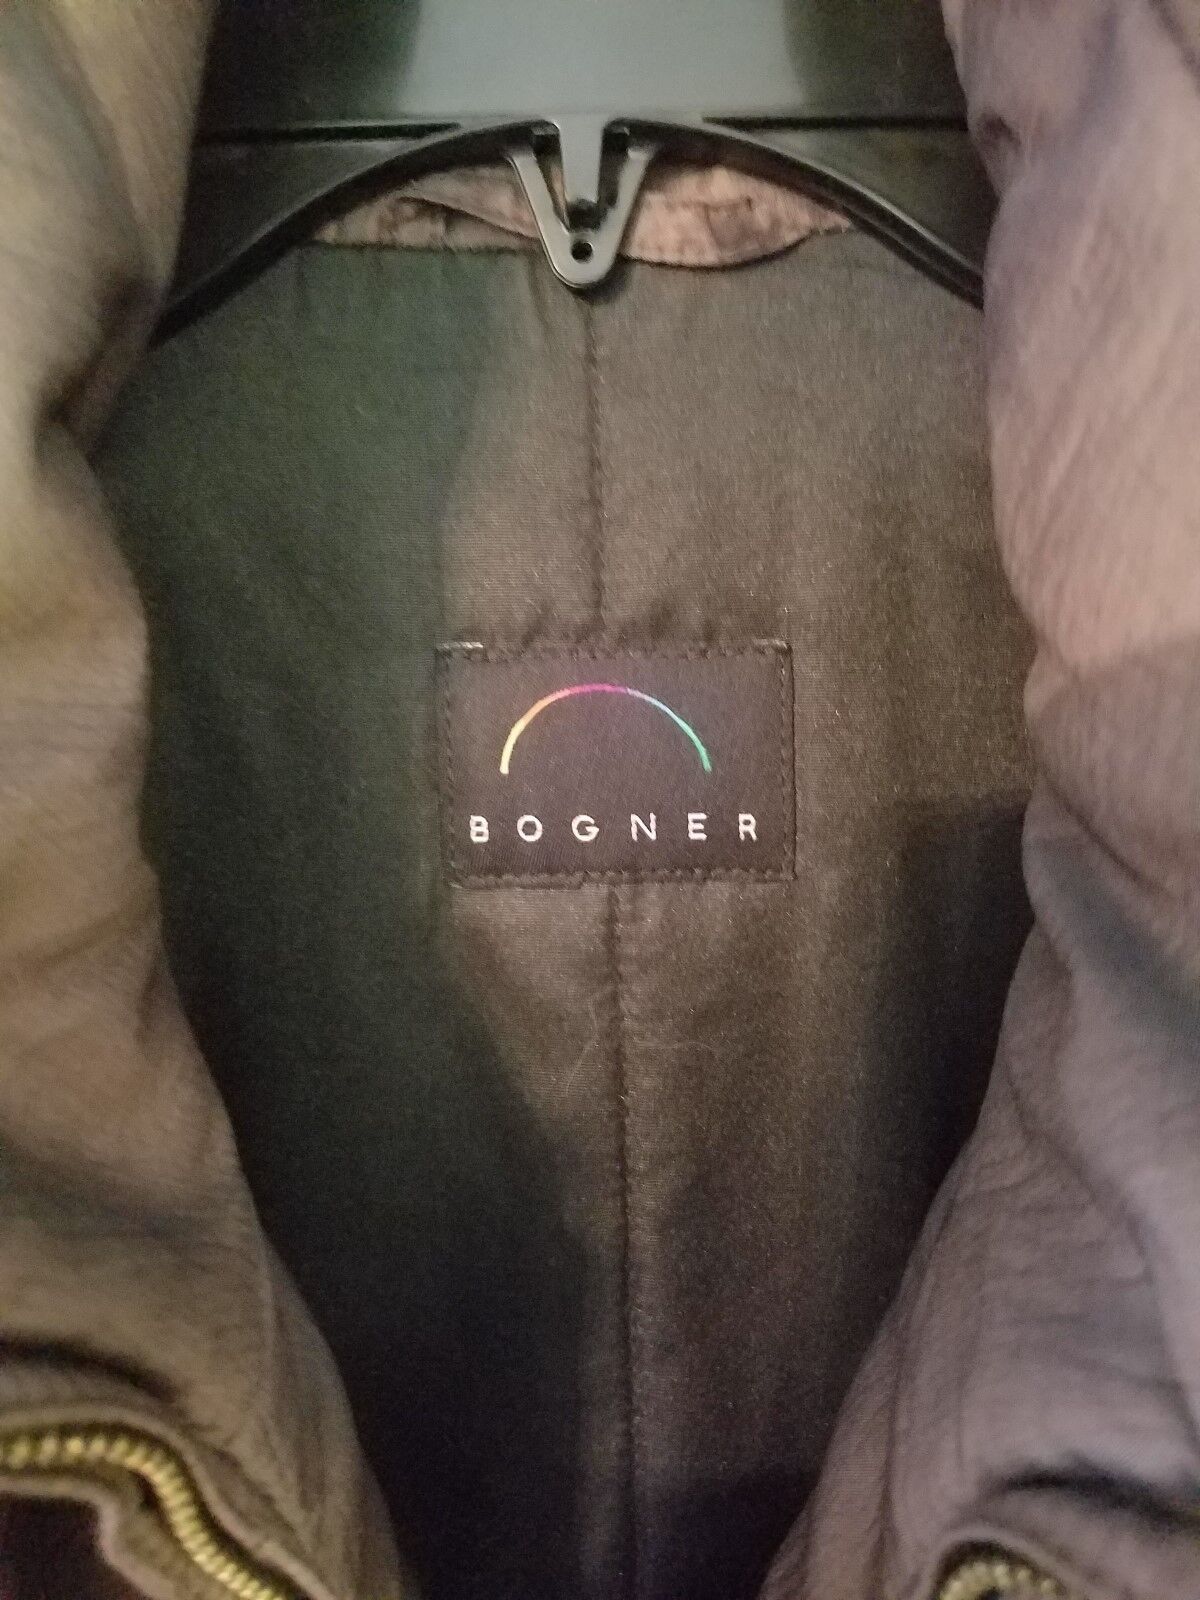 BOGNER SKI JACKET BRONZE/BROWN MISSES SIZE 4 #2681 Bogner N/A - фотография #8